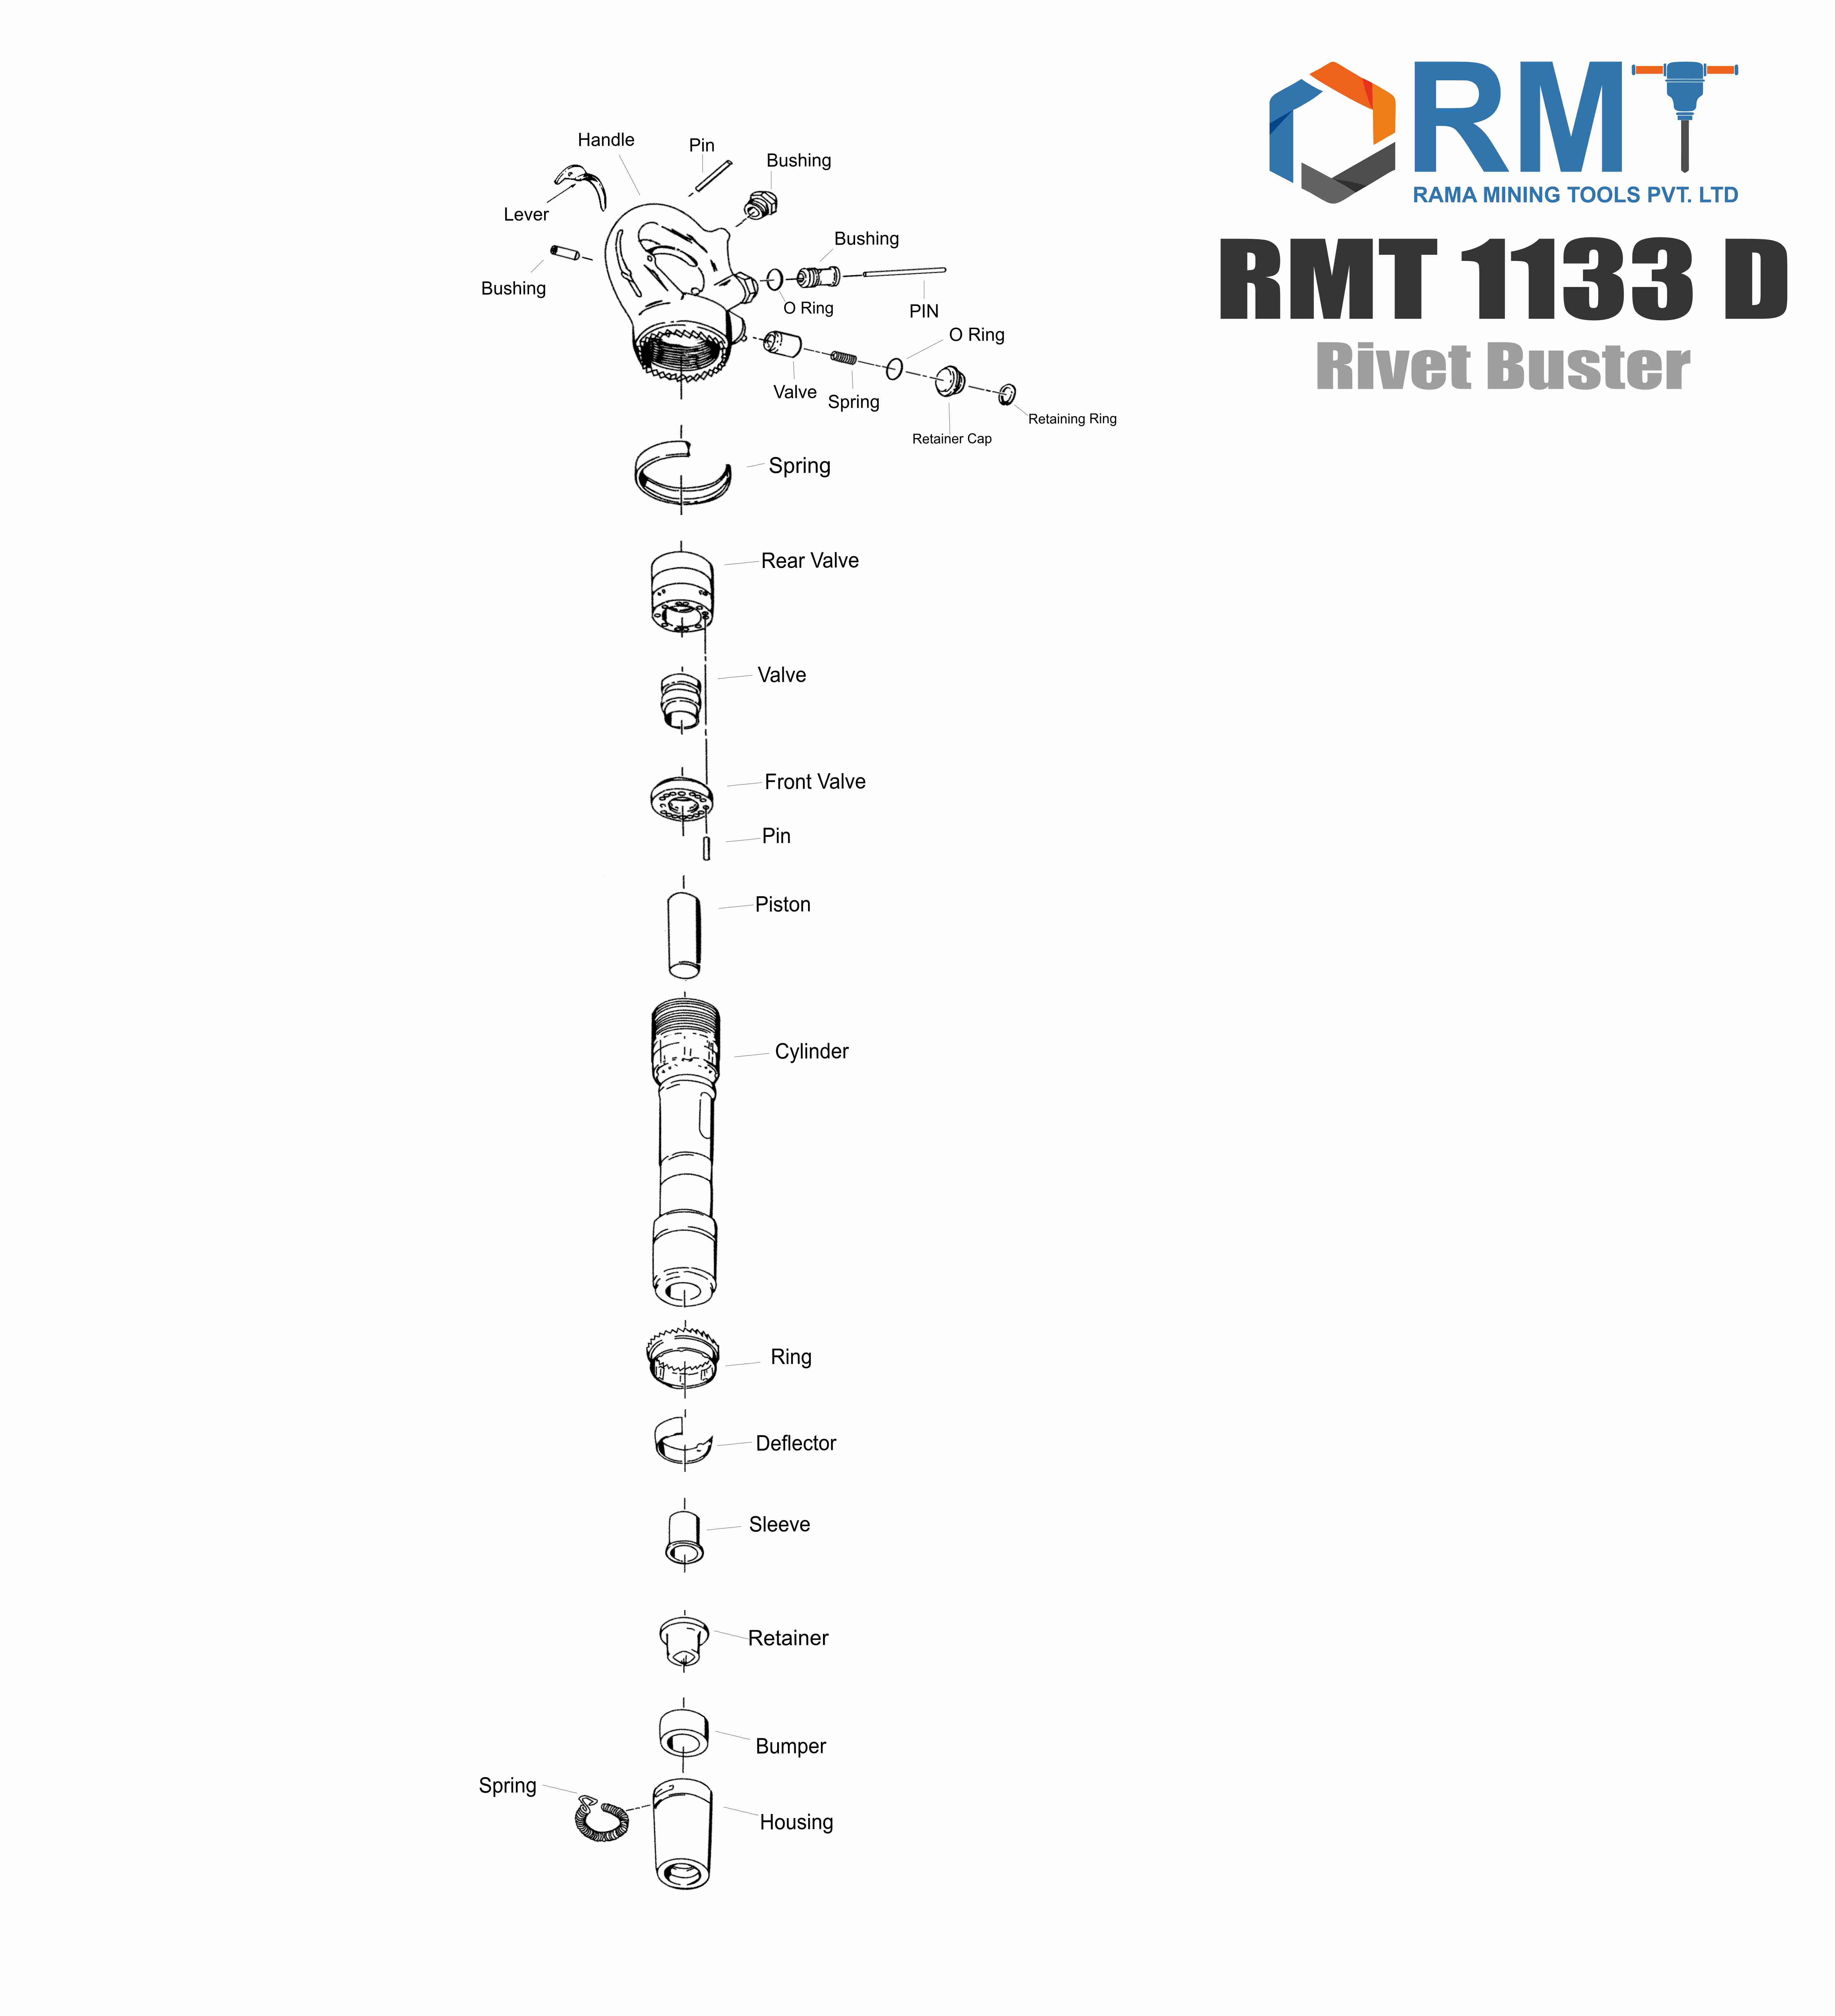 RMT 1133 D Rivet Buster